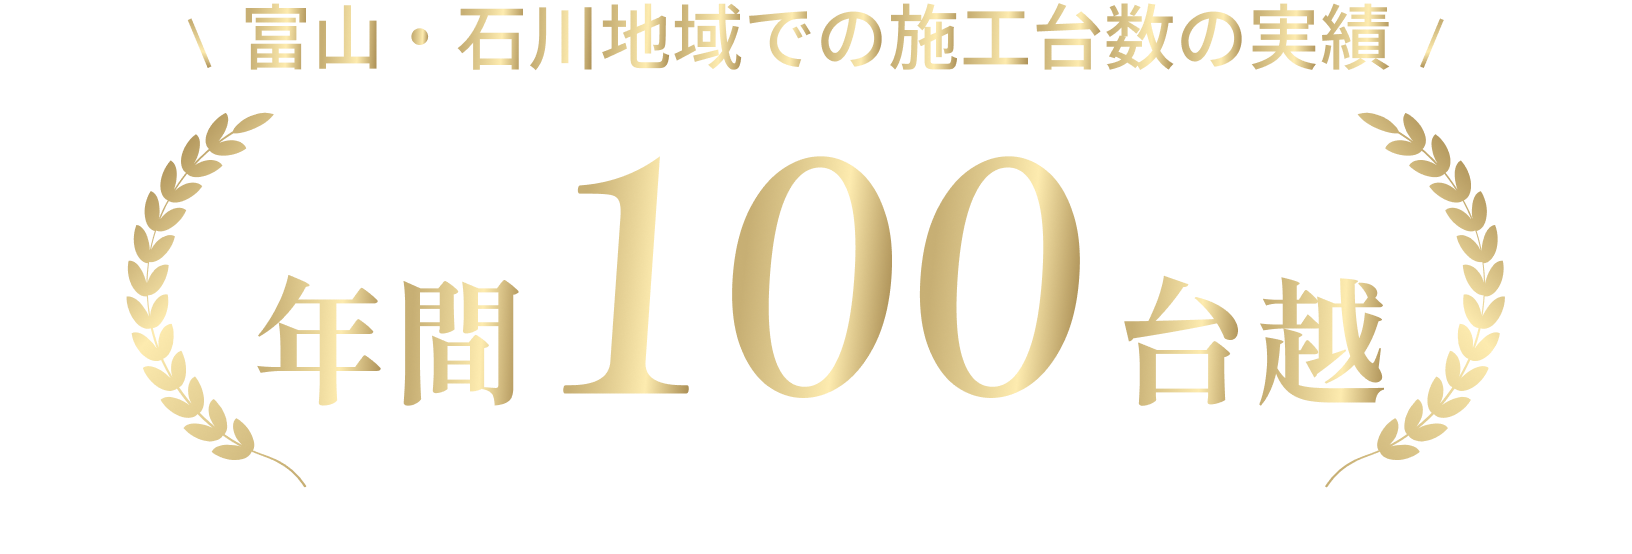 富山・石川地域での施工台数の実績 年間１００台越え